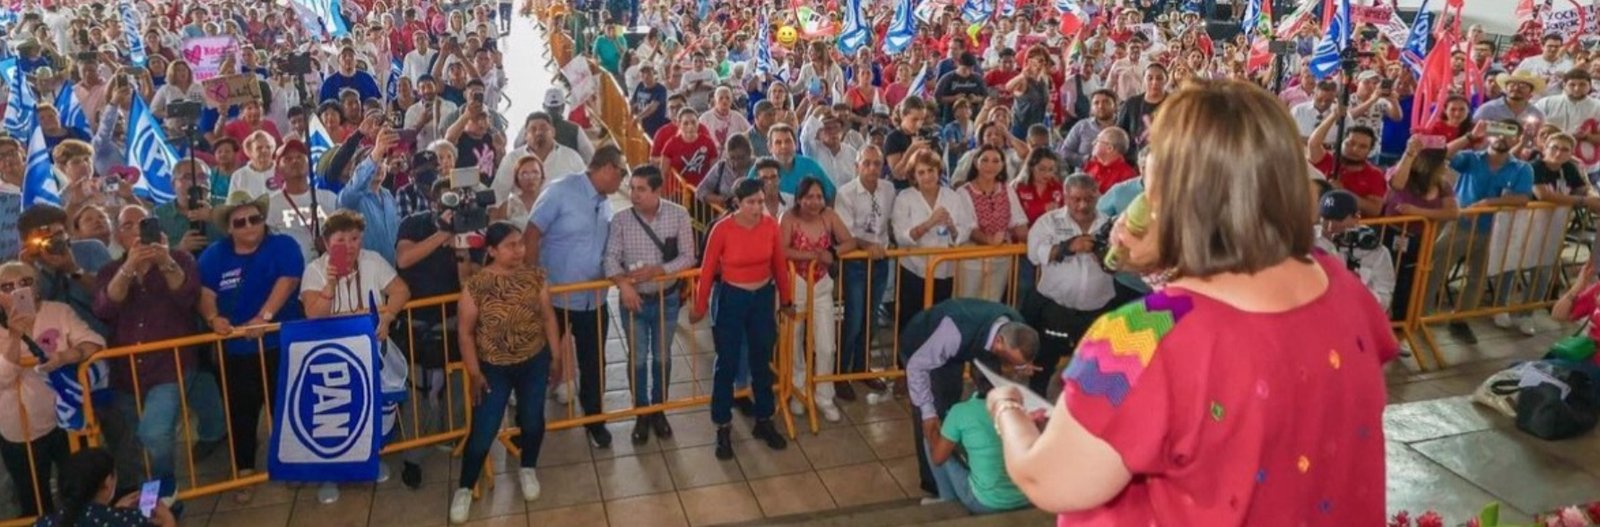 Gestos de agradecimiento y seguridad marcan la campaña de Xóchitl Gálvez en Chiapas